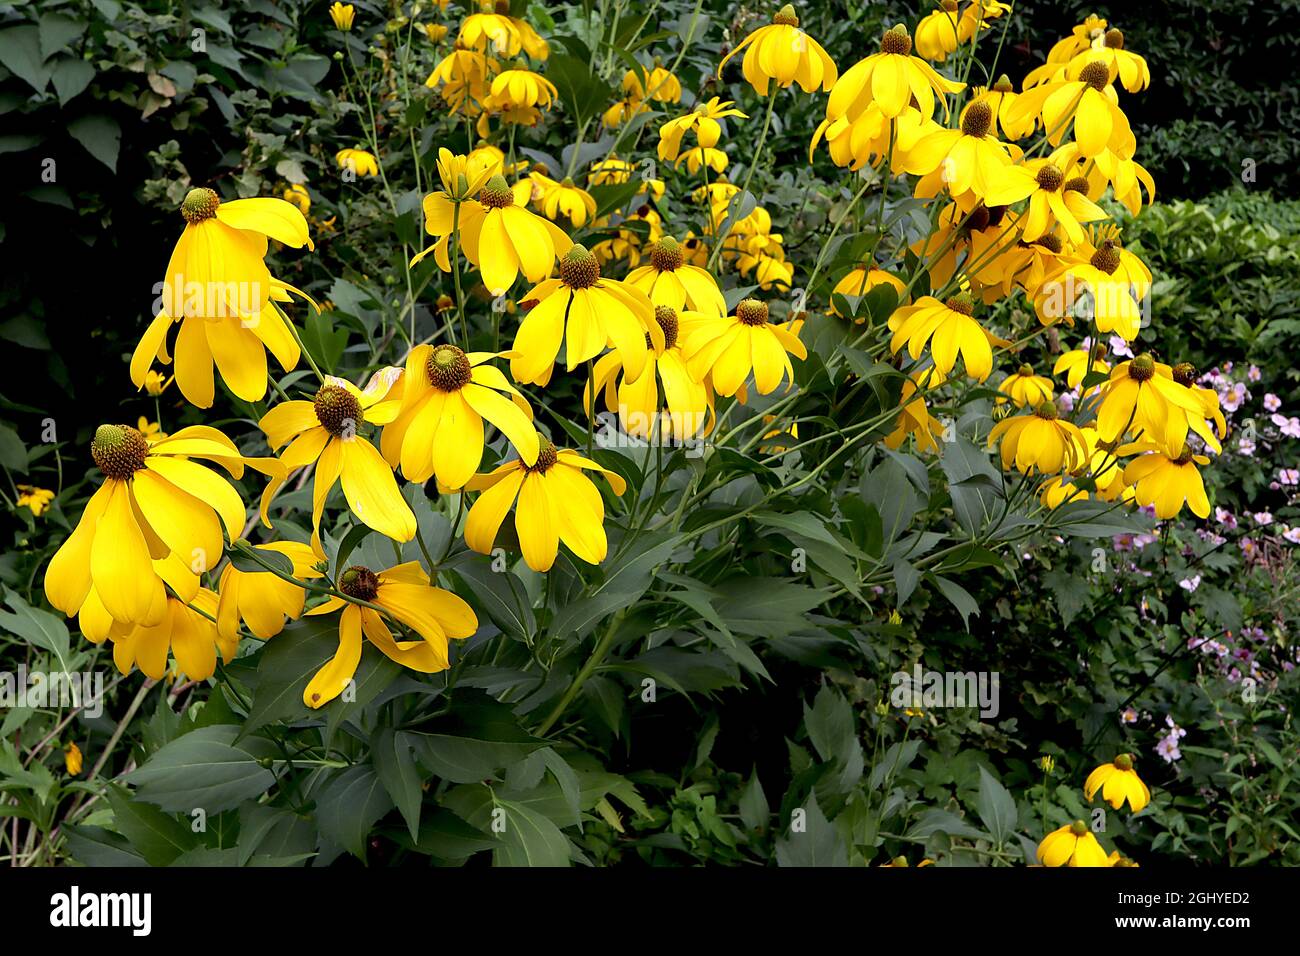 Rudbeckia laciniata ‘Herbstsonne’ cutleaf Coneflower Herbston - fiori gialli petali ricurvi, centro cono verde, foglie incise, steli molto alti Foto Stock